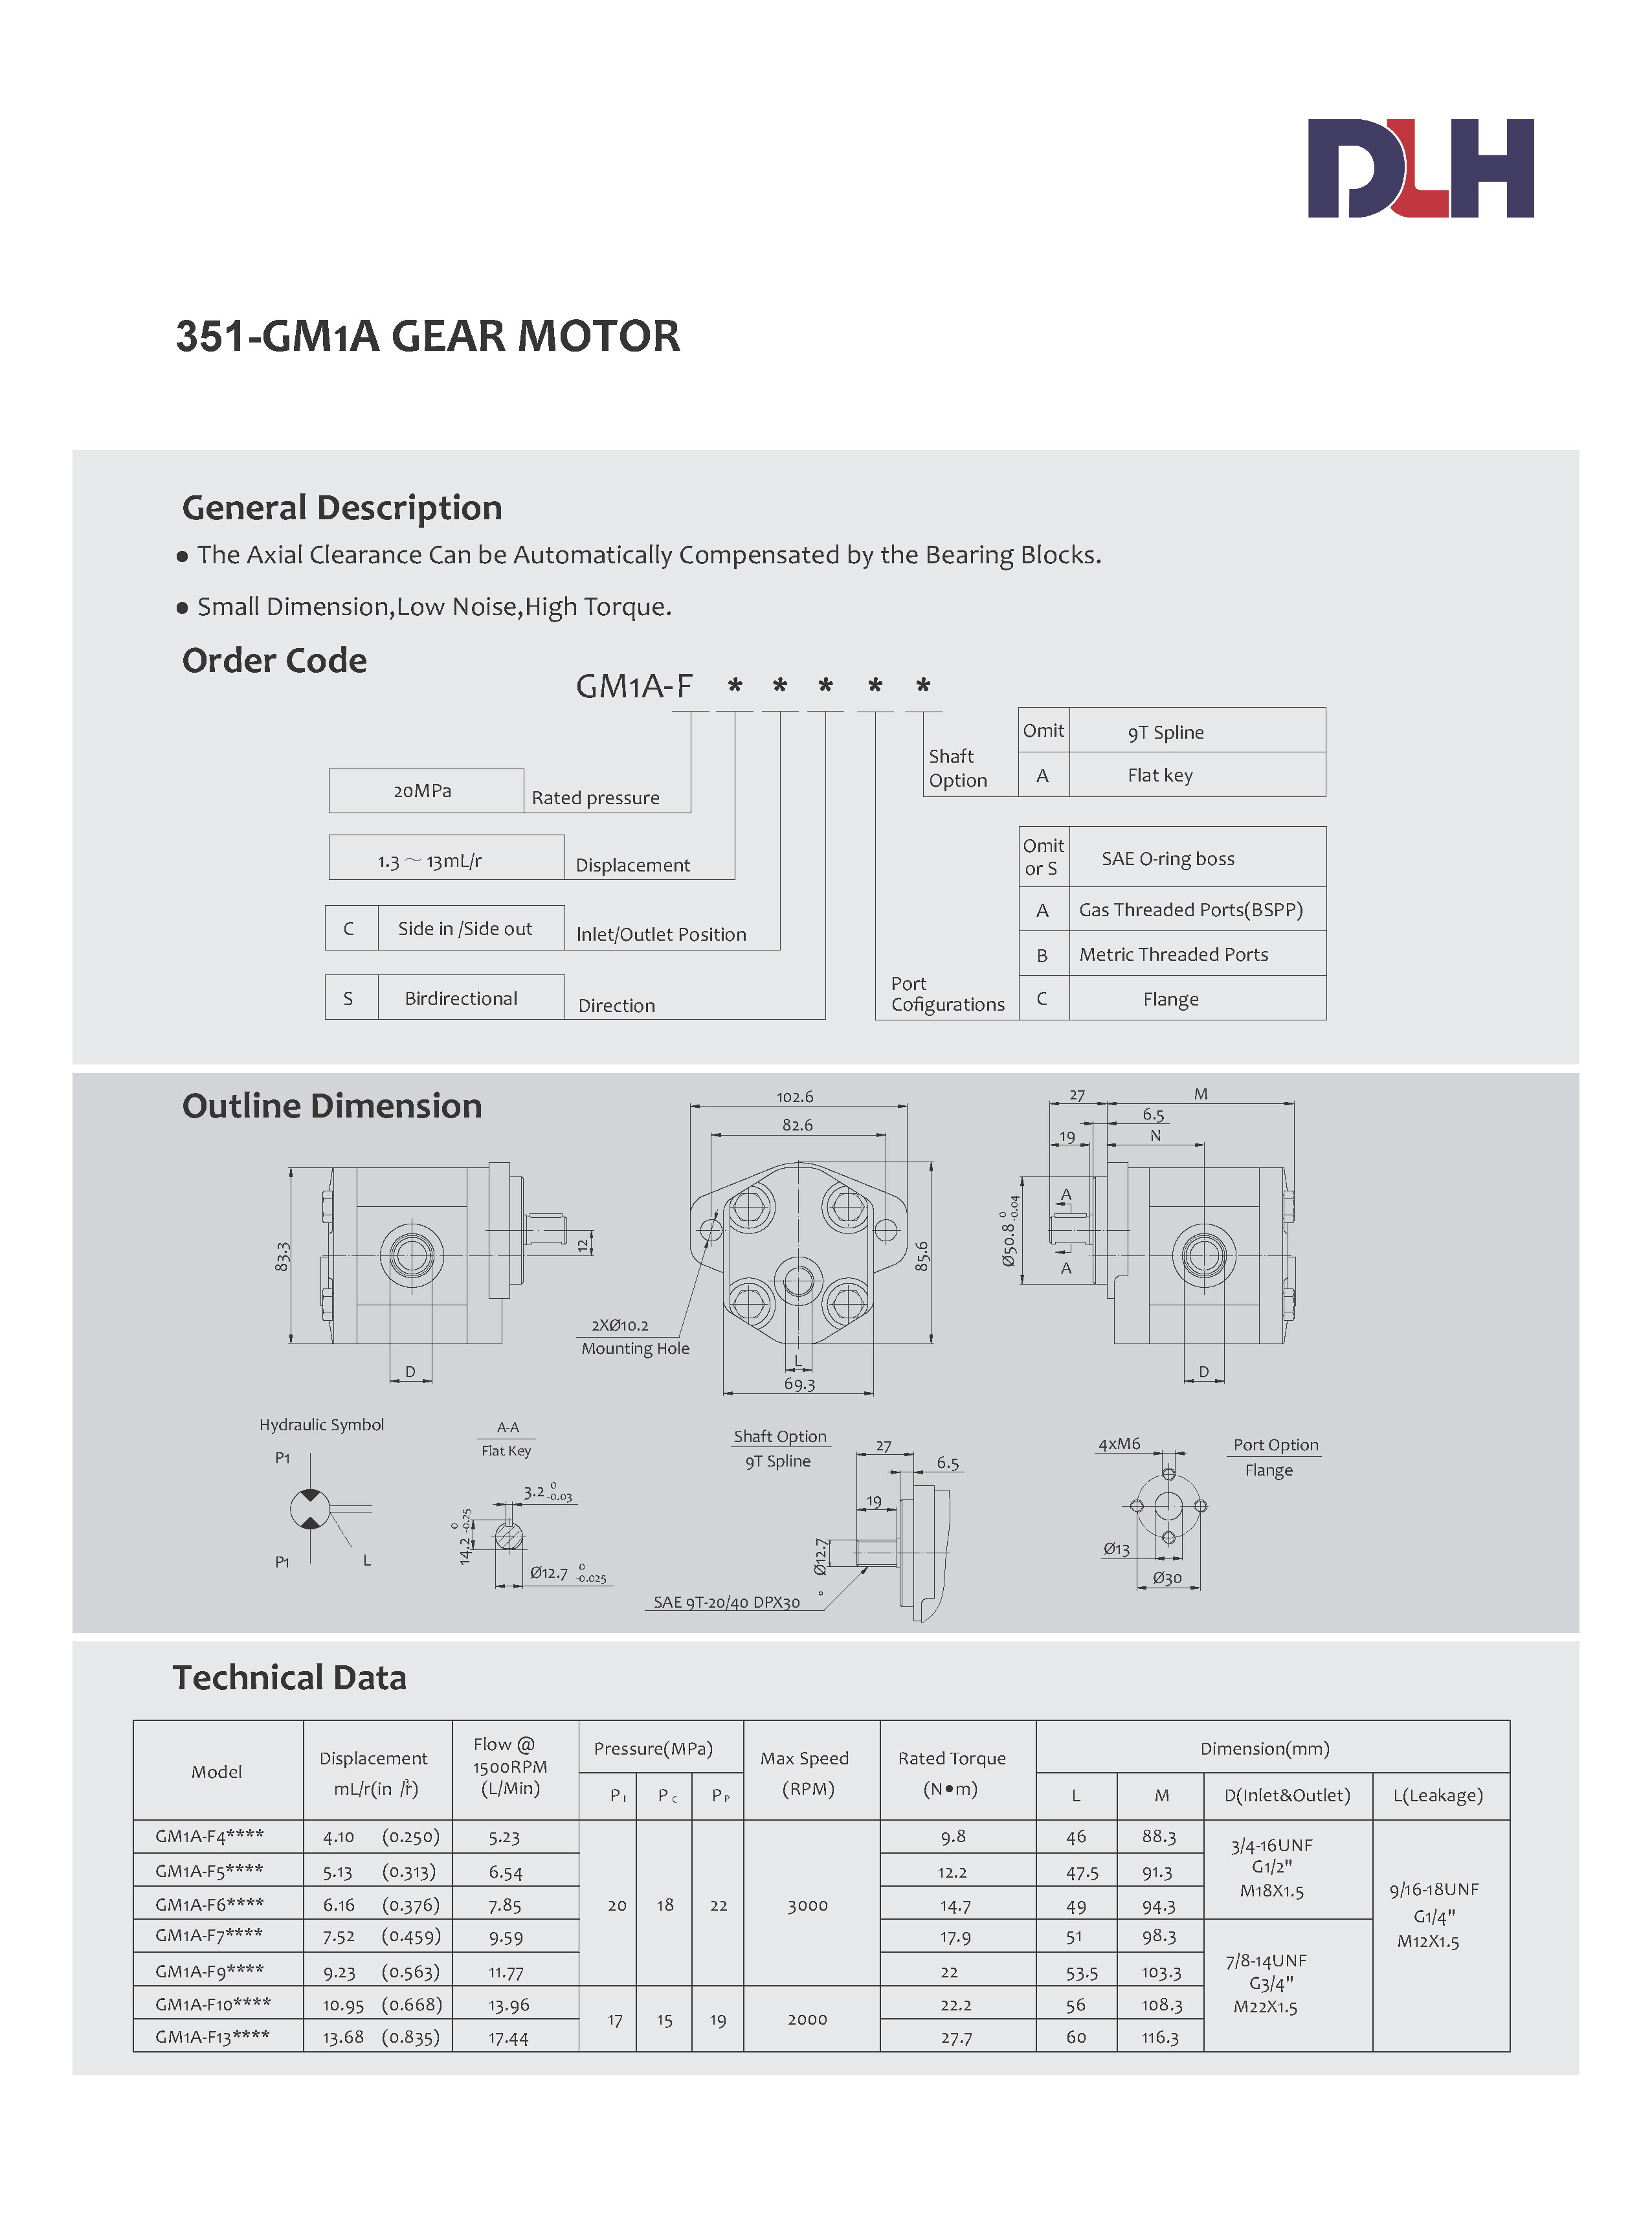 GM1A Gear Motors